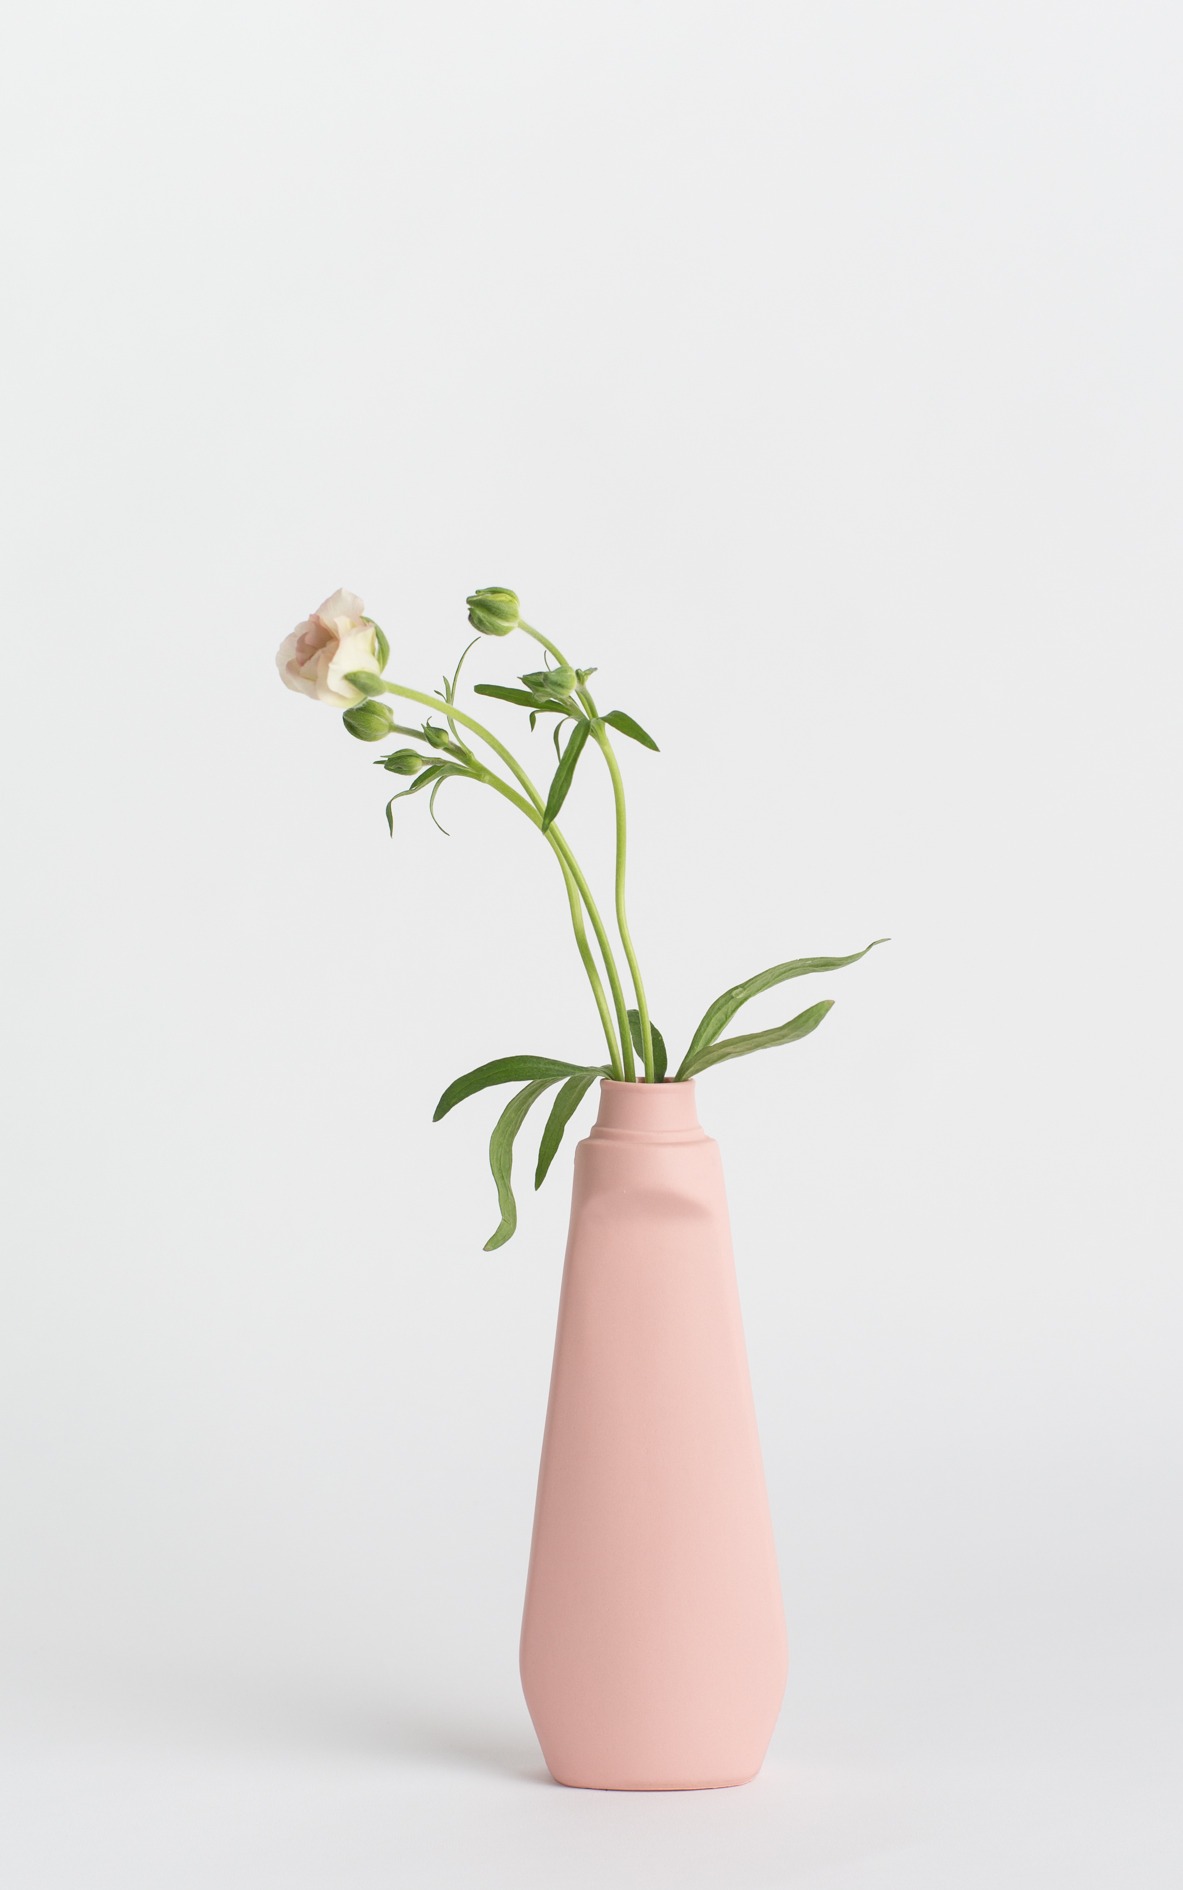 bottle vase #4 rose pink with flower